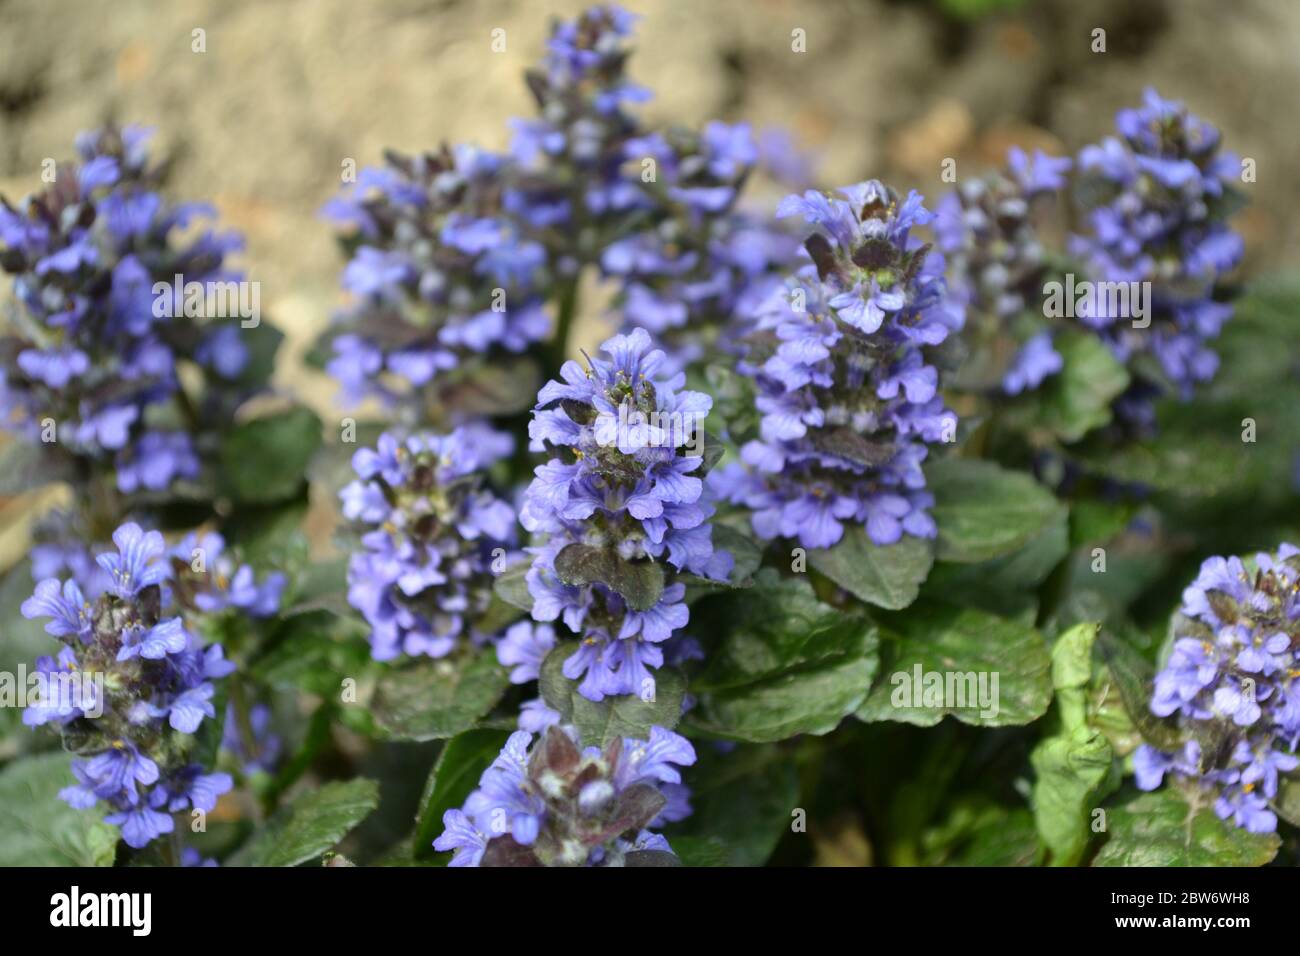 Grün. Gartenarbeit. Ajuga reptans. Mehrjährige krautige Pflanze. Blaue Blütenstände, angenehmer Geruch Stockfoto